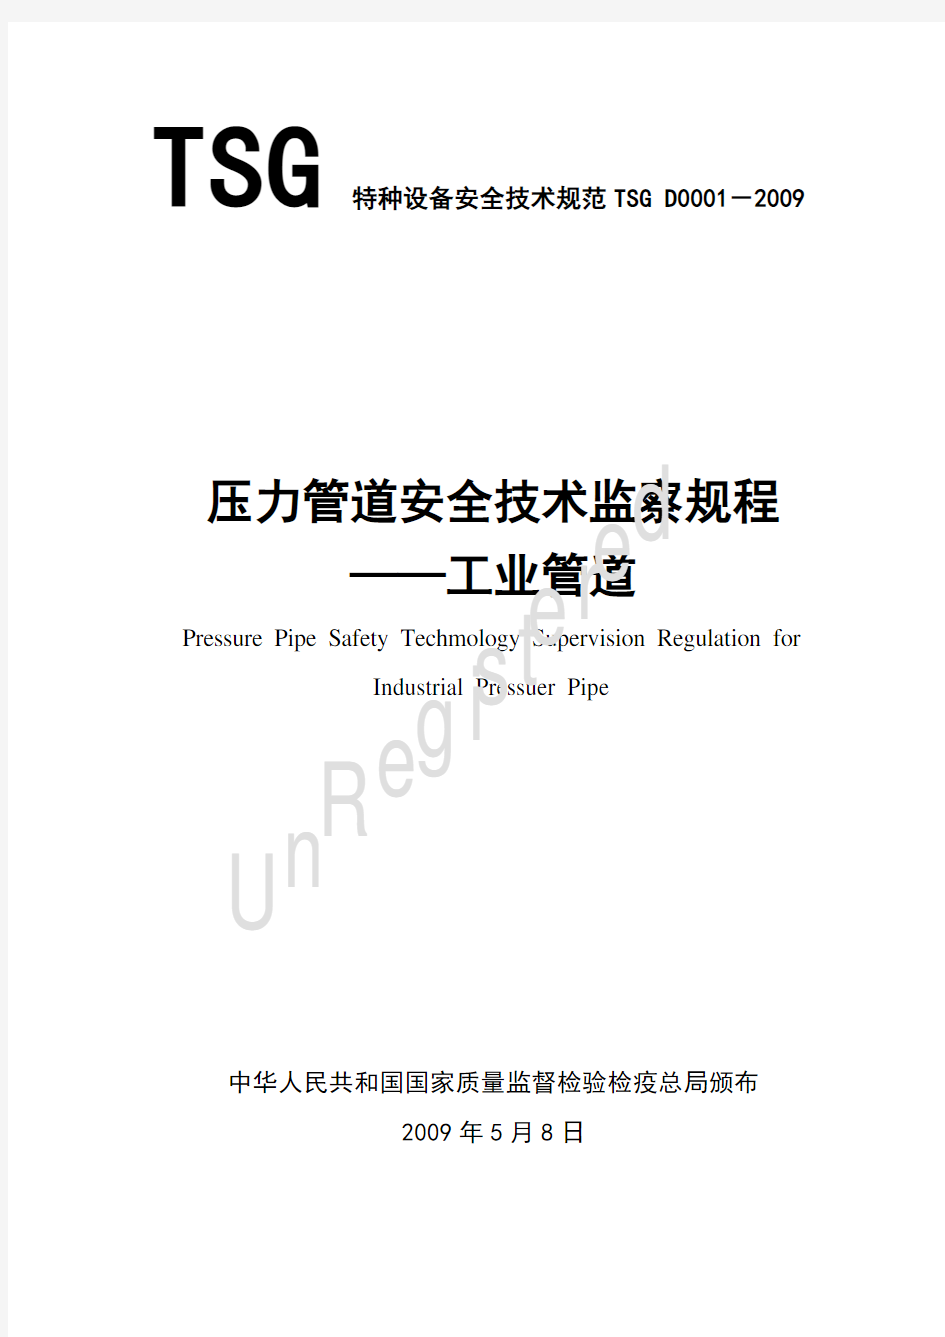 TSGD0001-2009压力管道安全技术监察规程-工业管道